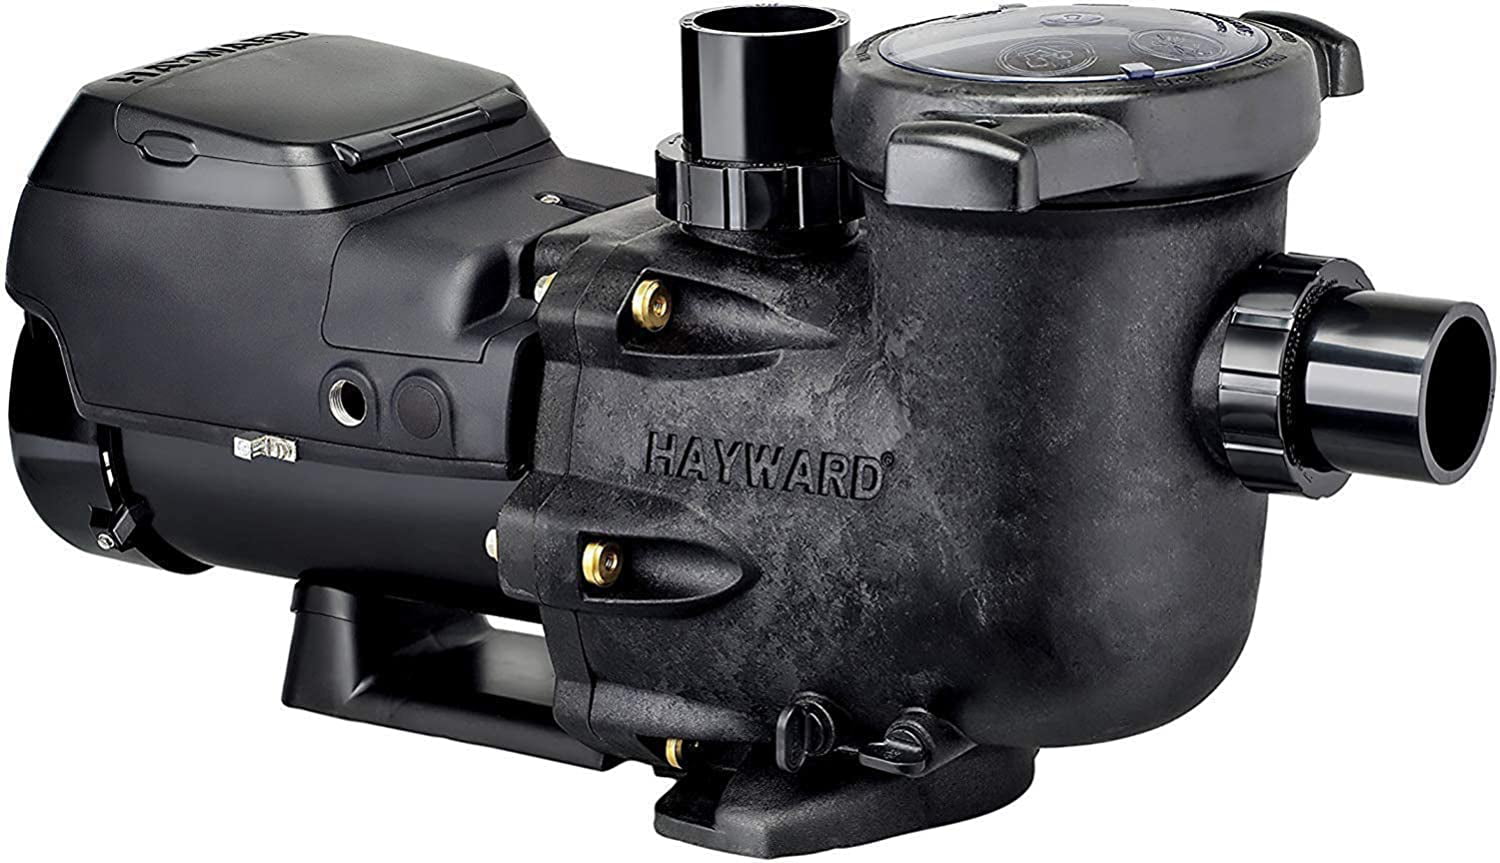 hayward-w3sp3206vsp-tristar-vs-variable-speed-pool-pump-2-7-hp